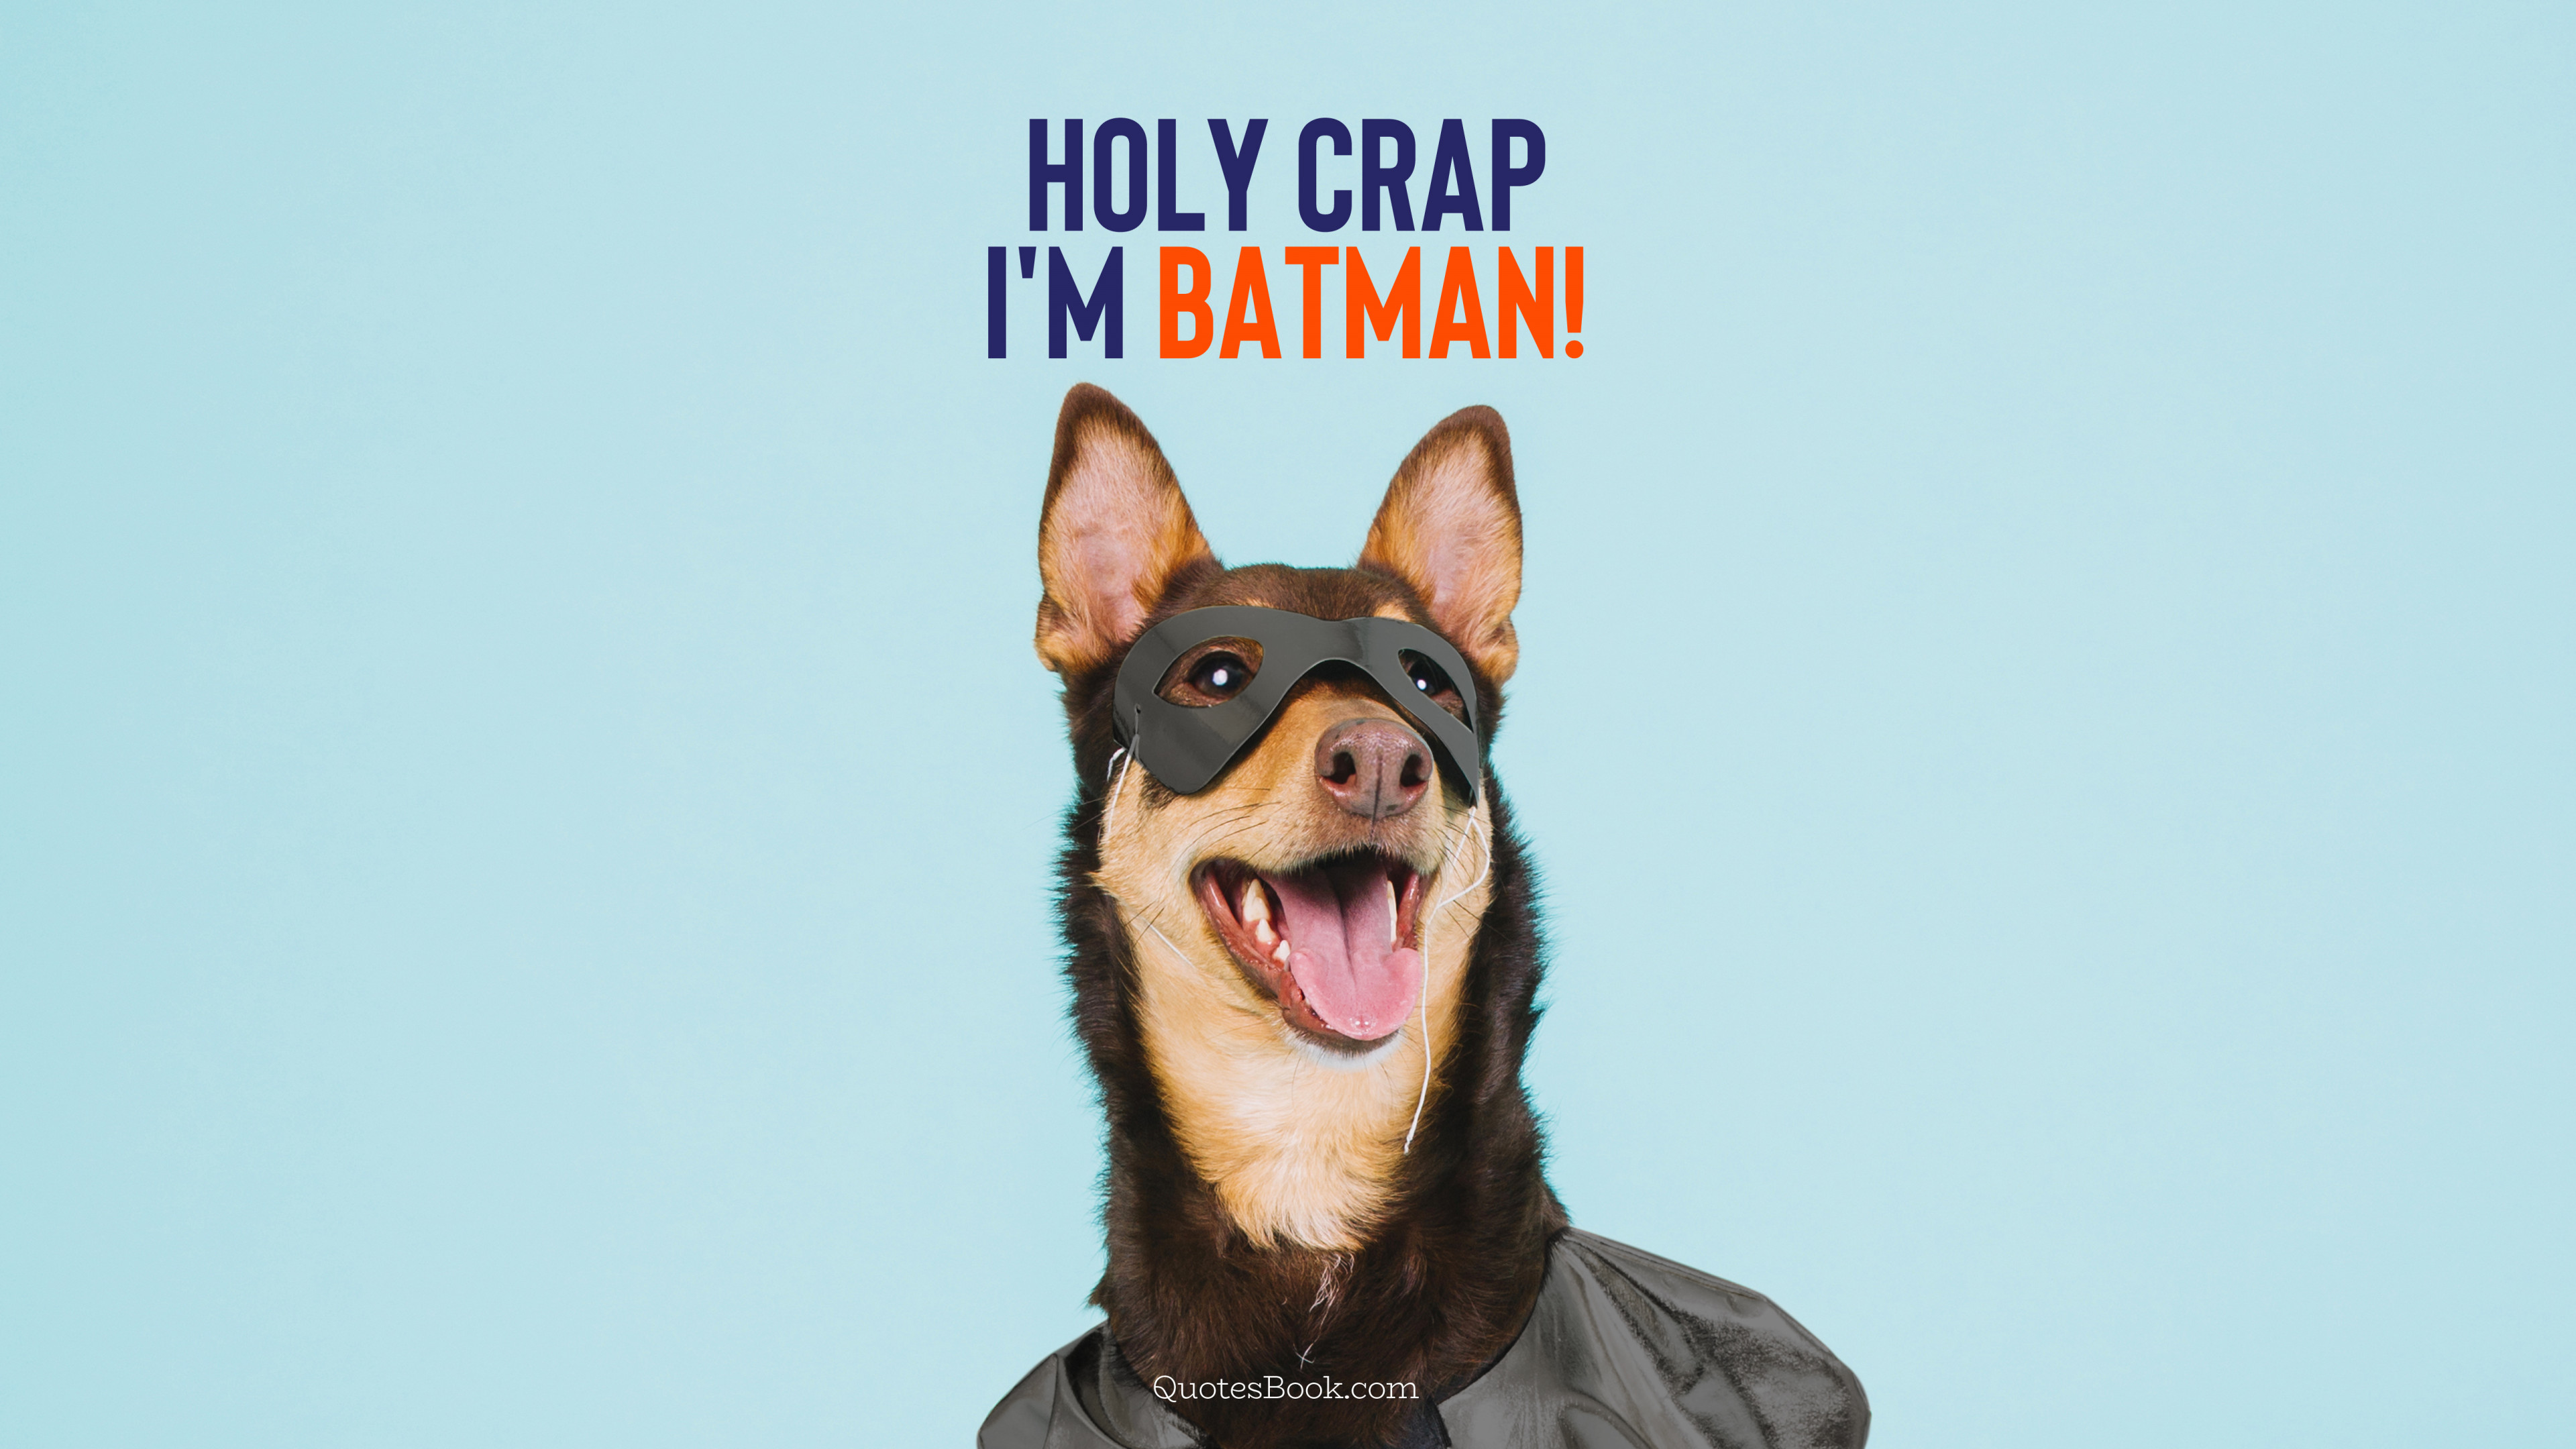 Holy crap I'm batman! - QuotesBook